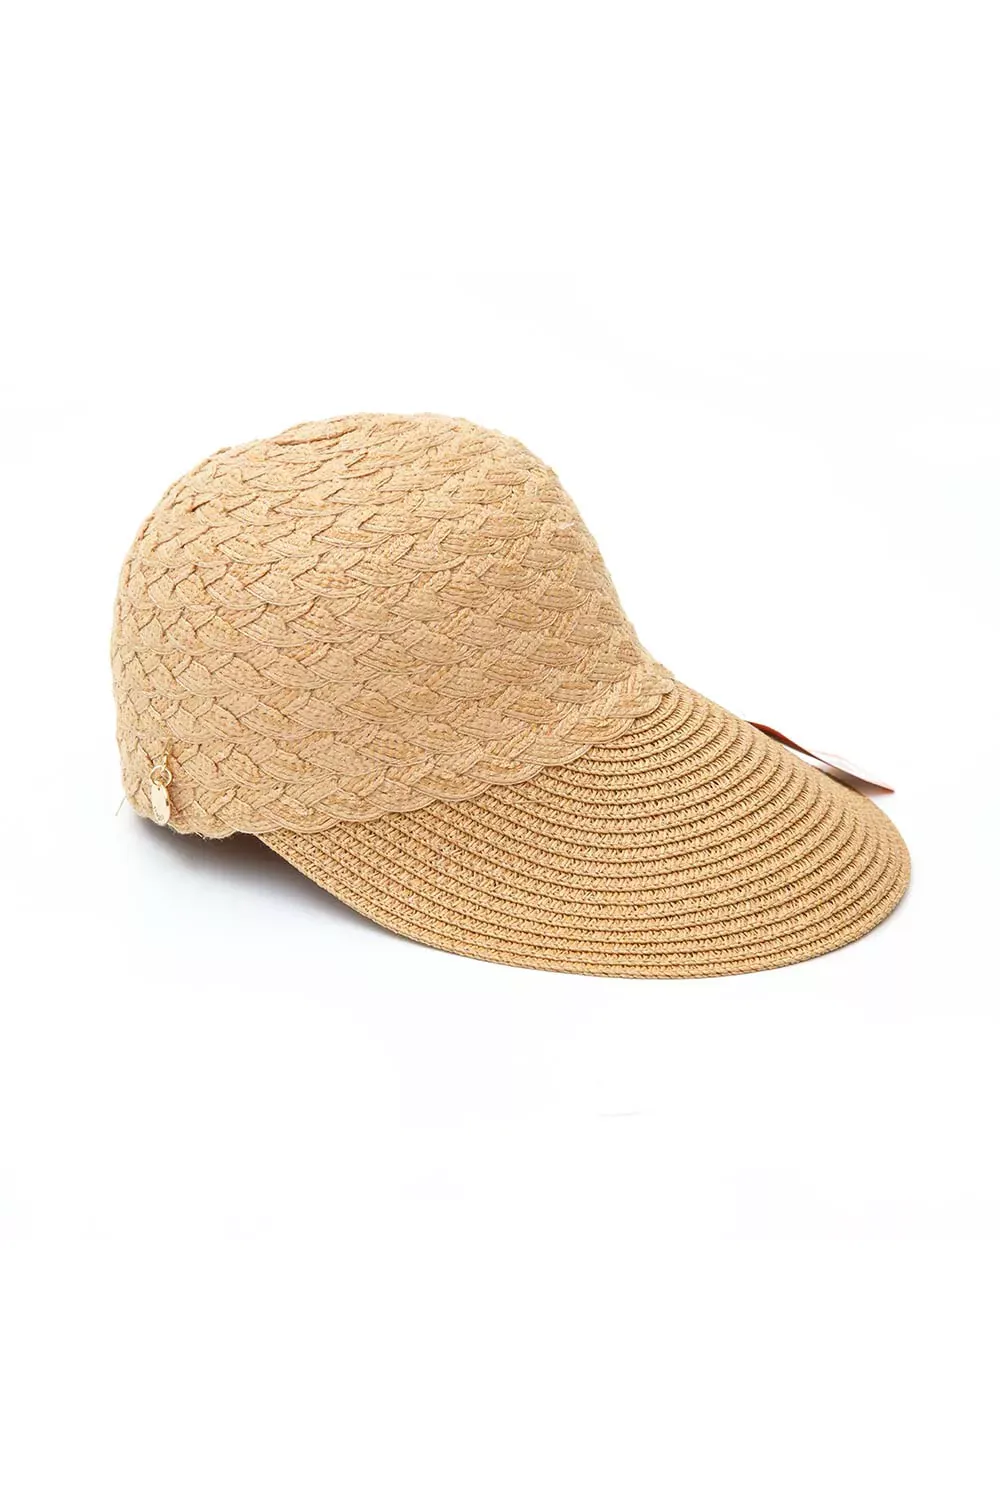 Γυναικείο καπέλο HAT01 - Dark beige, ONESIZE